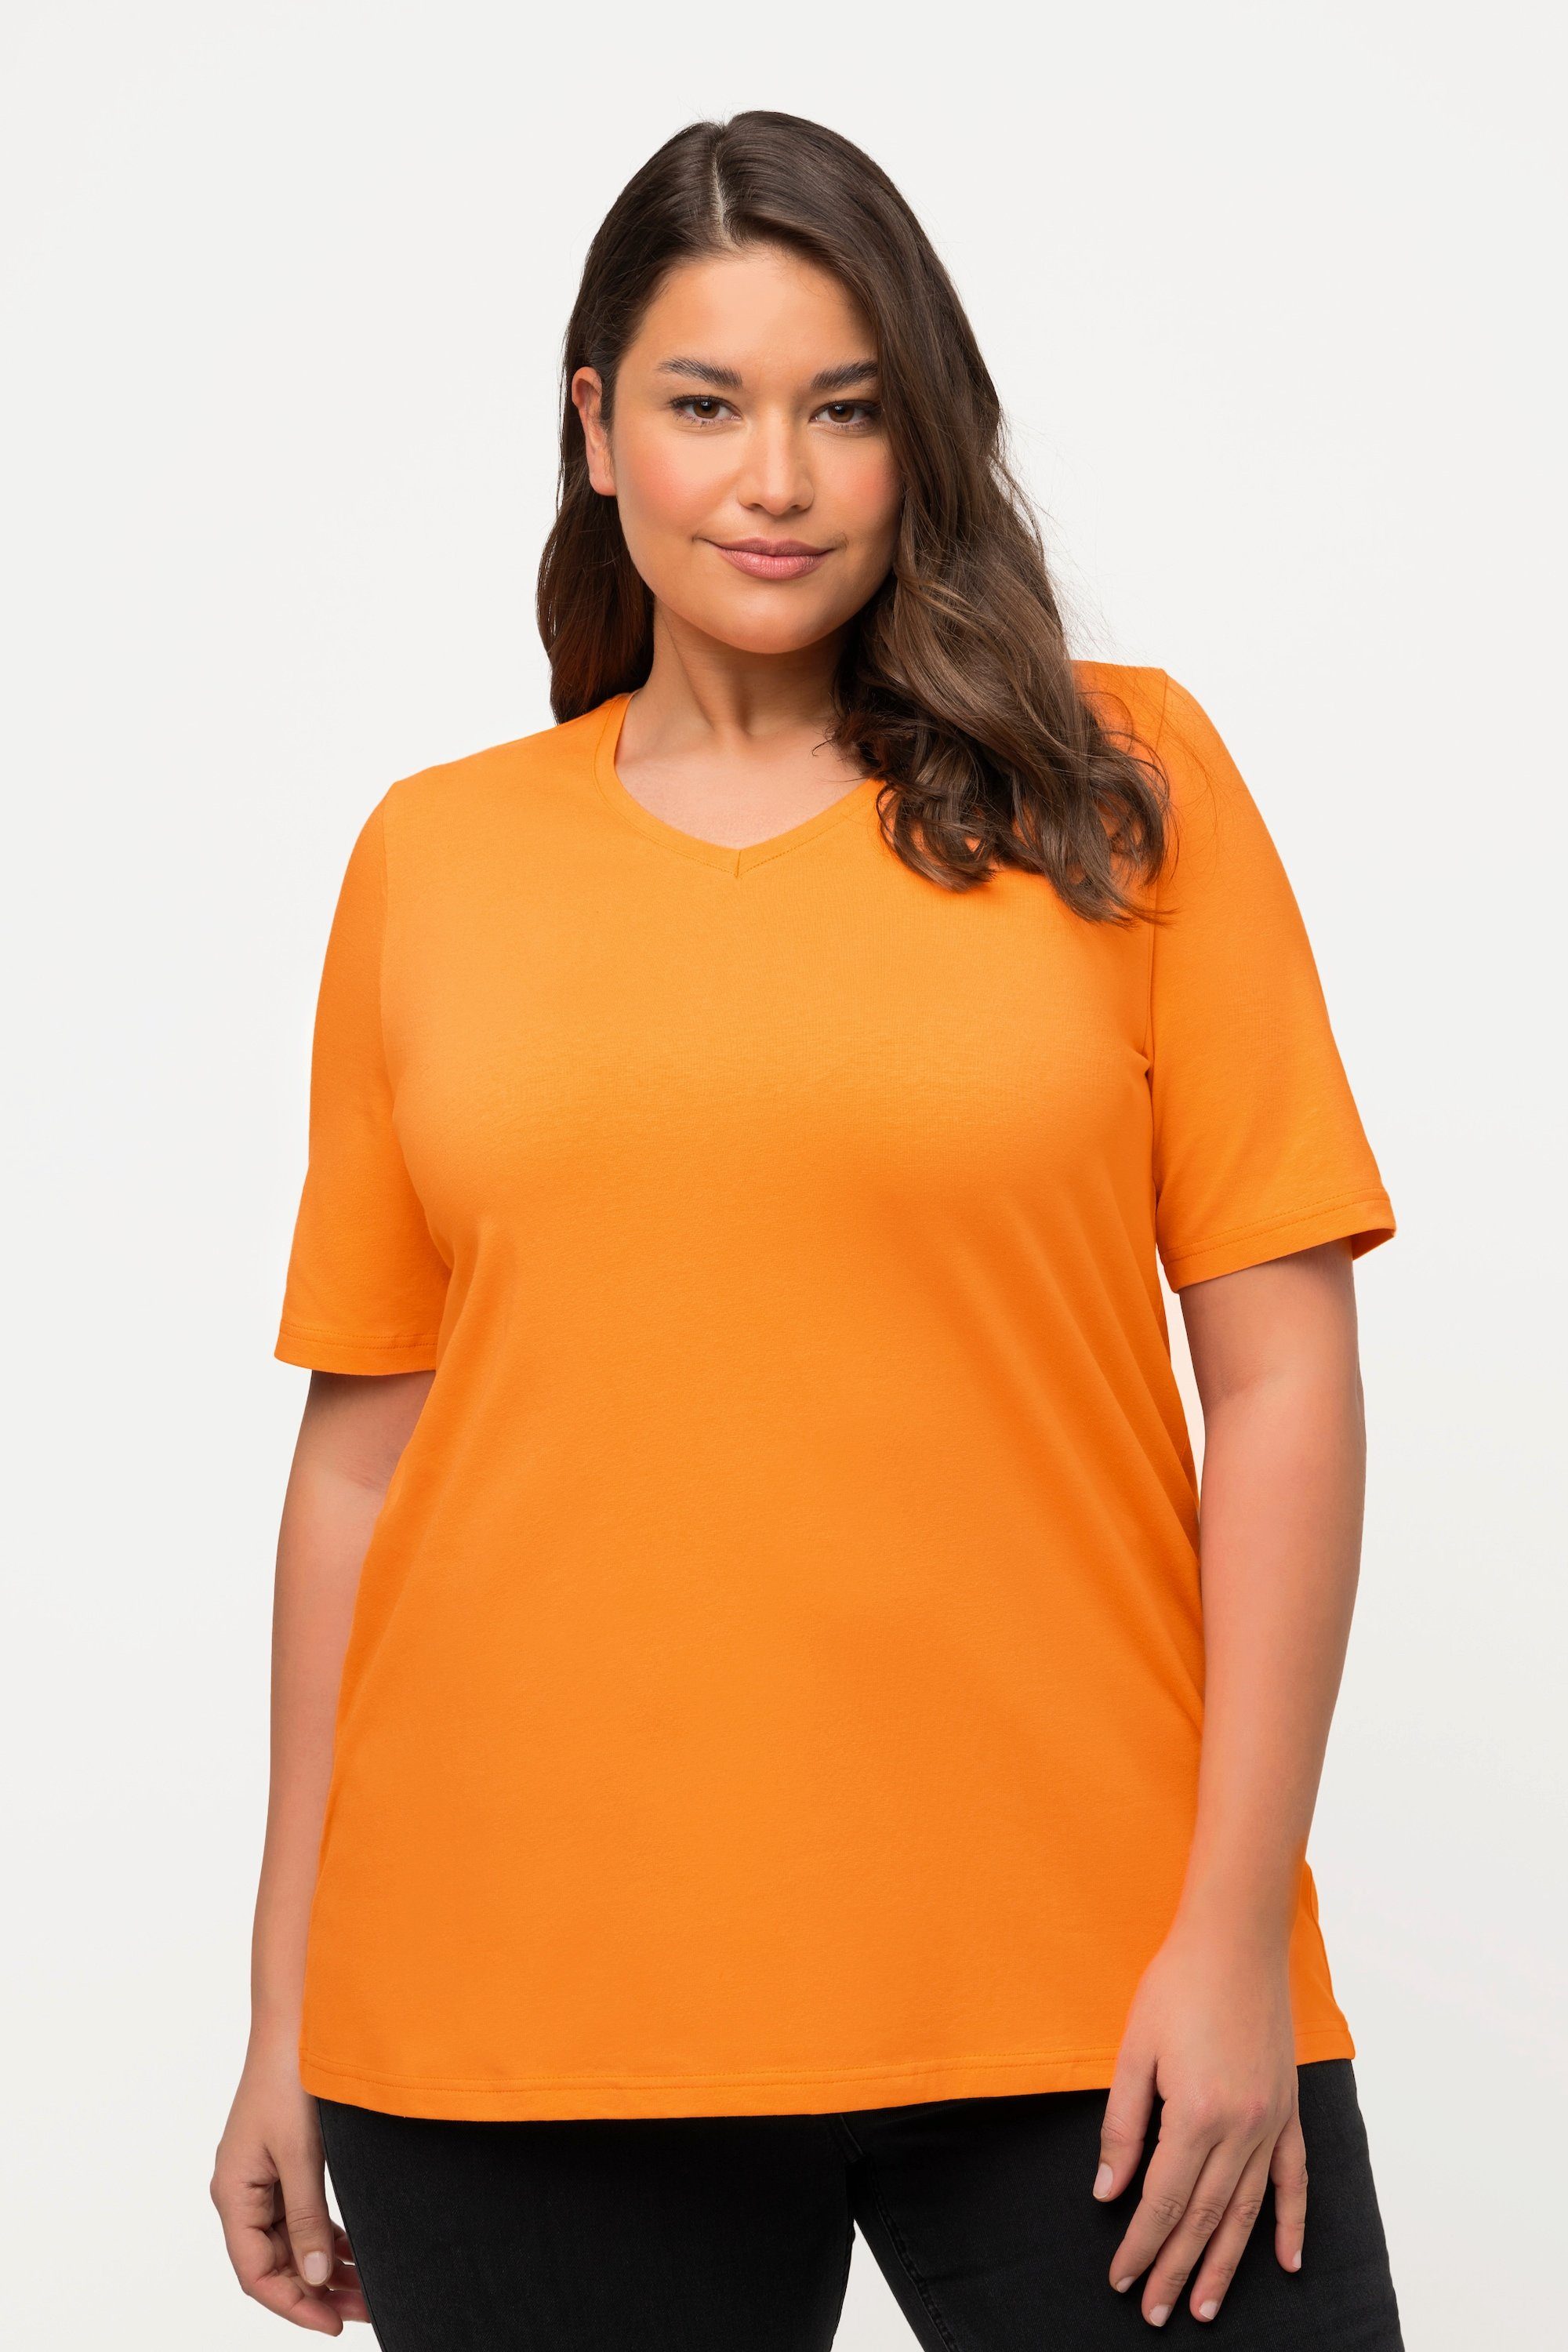 Popken A-Linie T-Shirt Rundhalsshirt Ulla orange cantaloupe V-Ausschnitt Halbarm